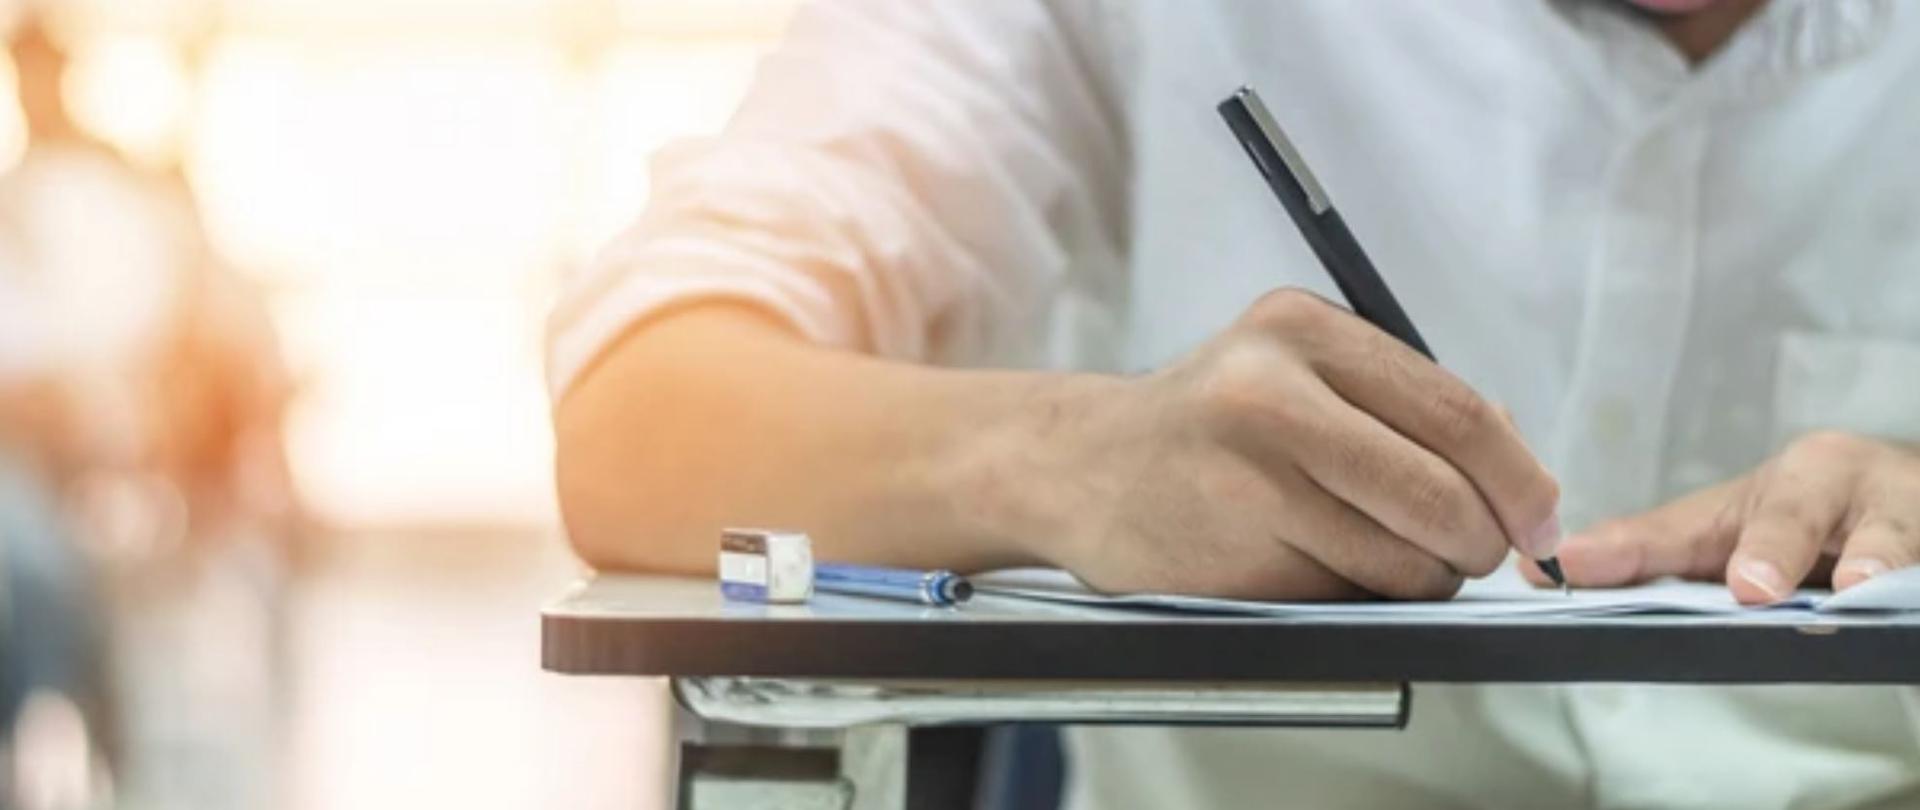 Uczeń w białęj koszuli pisze egzamin przy stoliku, trzyma w reku długopis. 